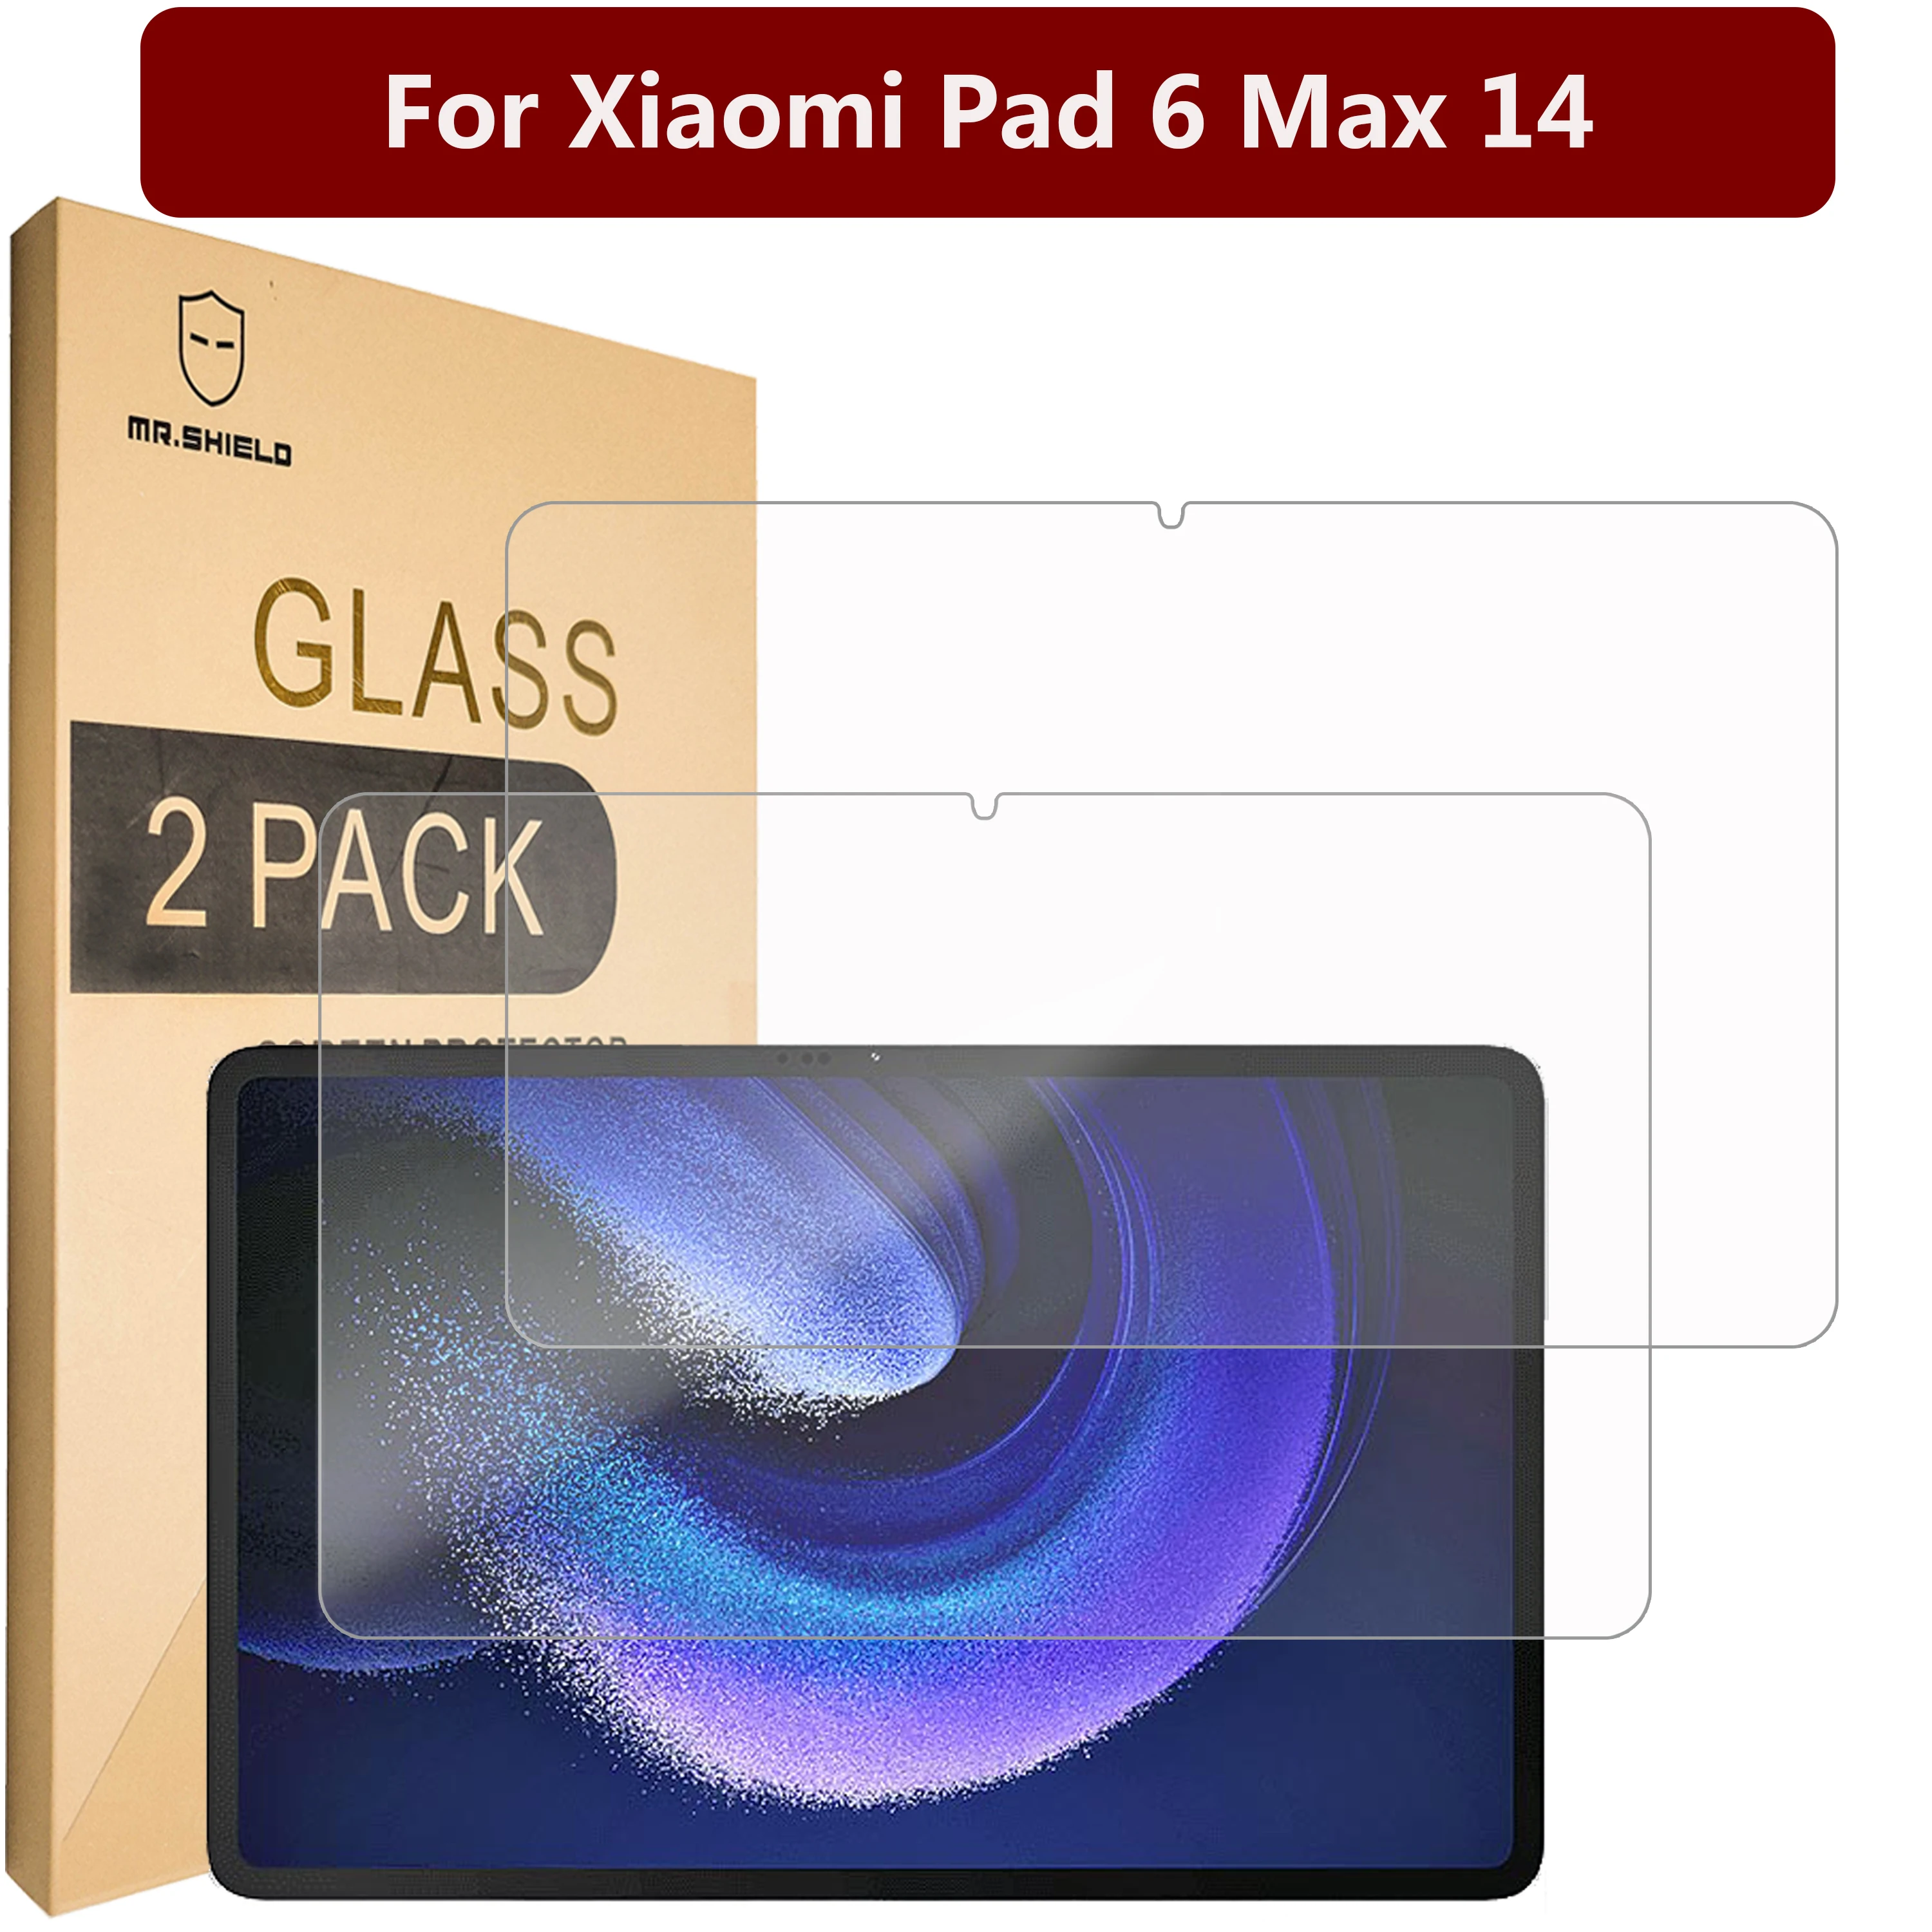 Защитная пленка Mr.Shield [в 2 упаковках] для Xiaomi Pad 6 Max 14 [закаленное стекло] [Японское стекло с твердостью 9H] Защитная пленка для экрана защитная пленка mr shield [в 3 упаковках] для экрана honor x7 [закаленное стекло] [японское стекло с твердостью 9h] защитная пленка для экрана